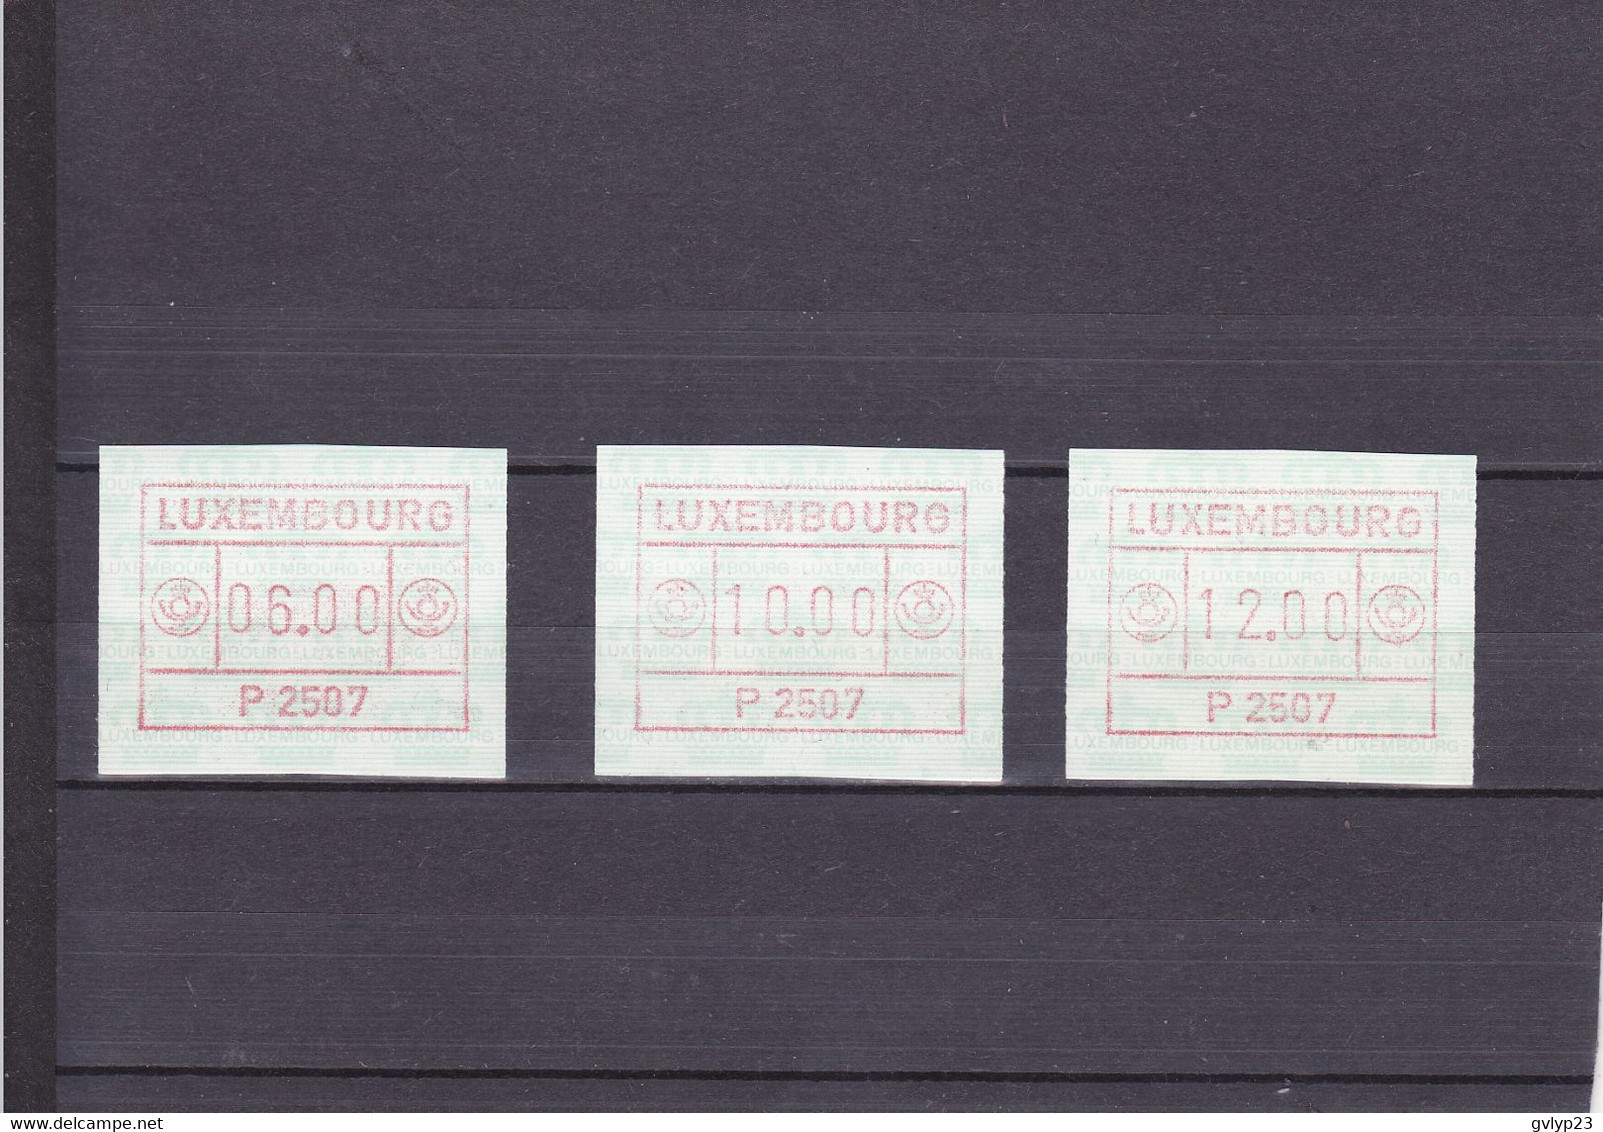 TIMBRES DE DISTRIBUTEURS/UNE SéRIE DE 3 VALEURS/6F, 10F, 12F/ N°1 YVERT ET TELLIER 1986 - Postage Labels